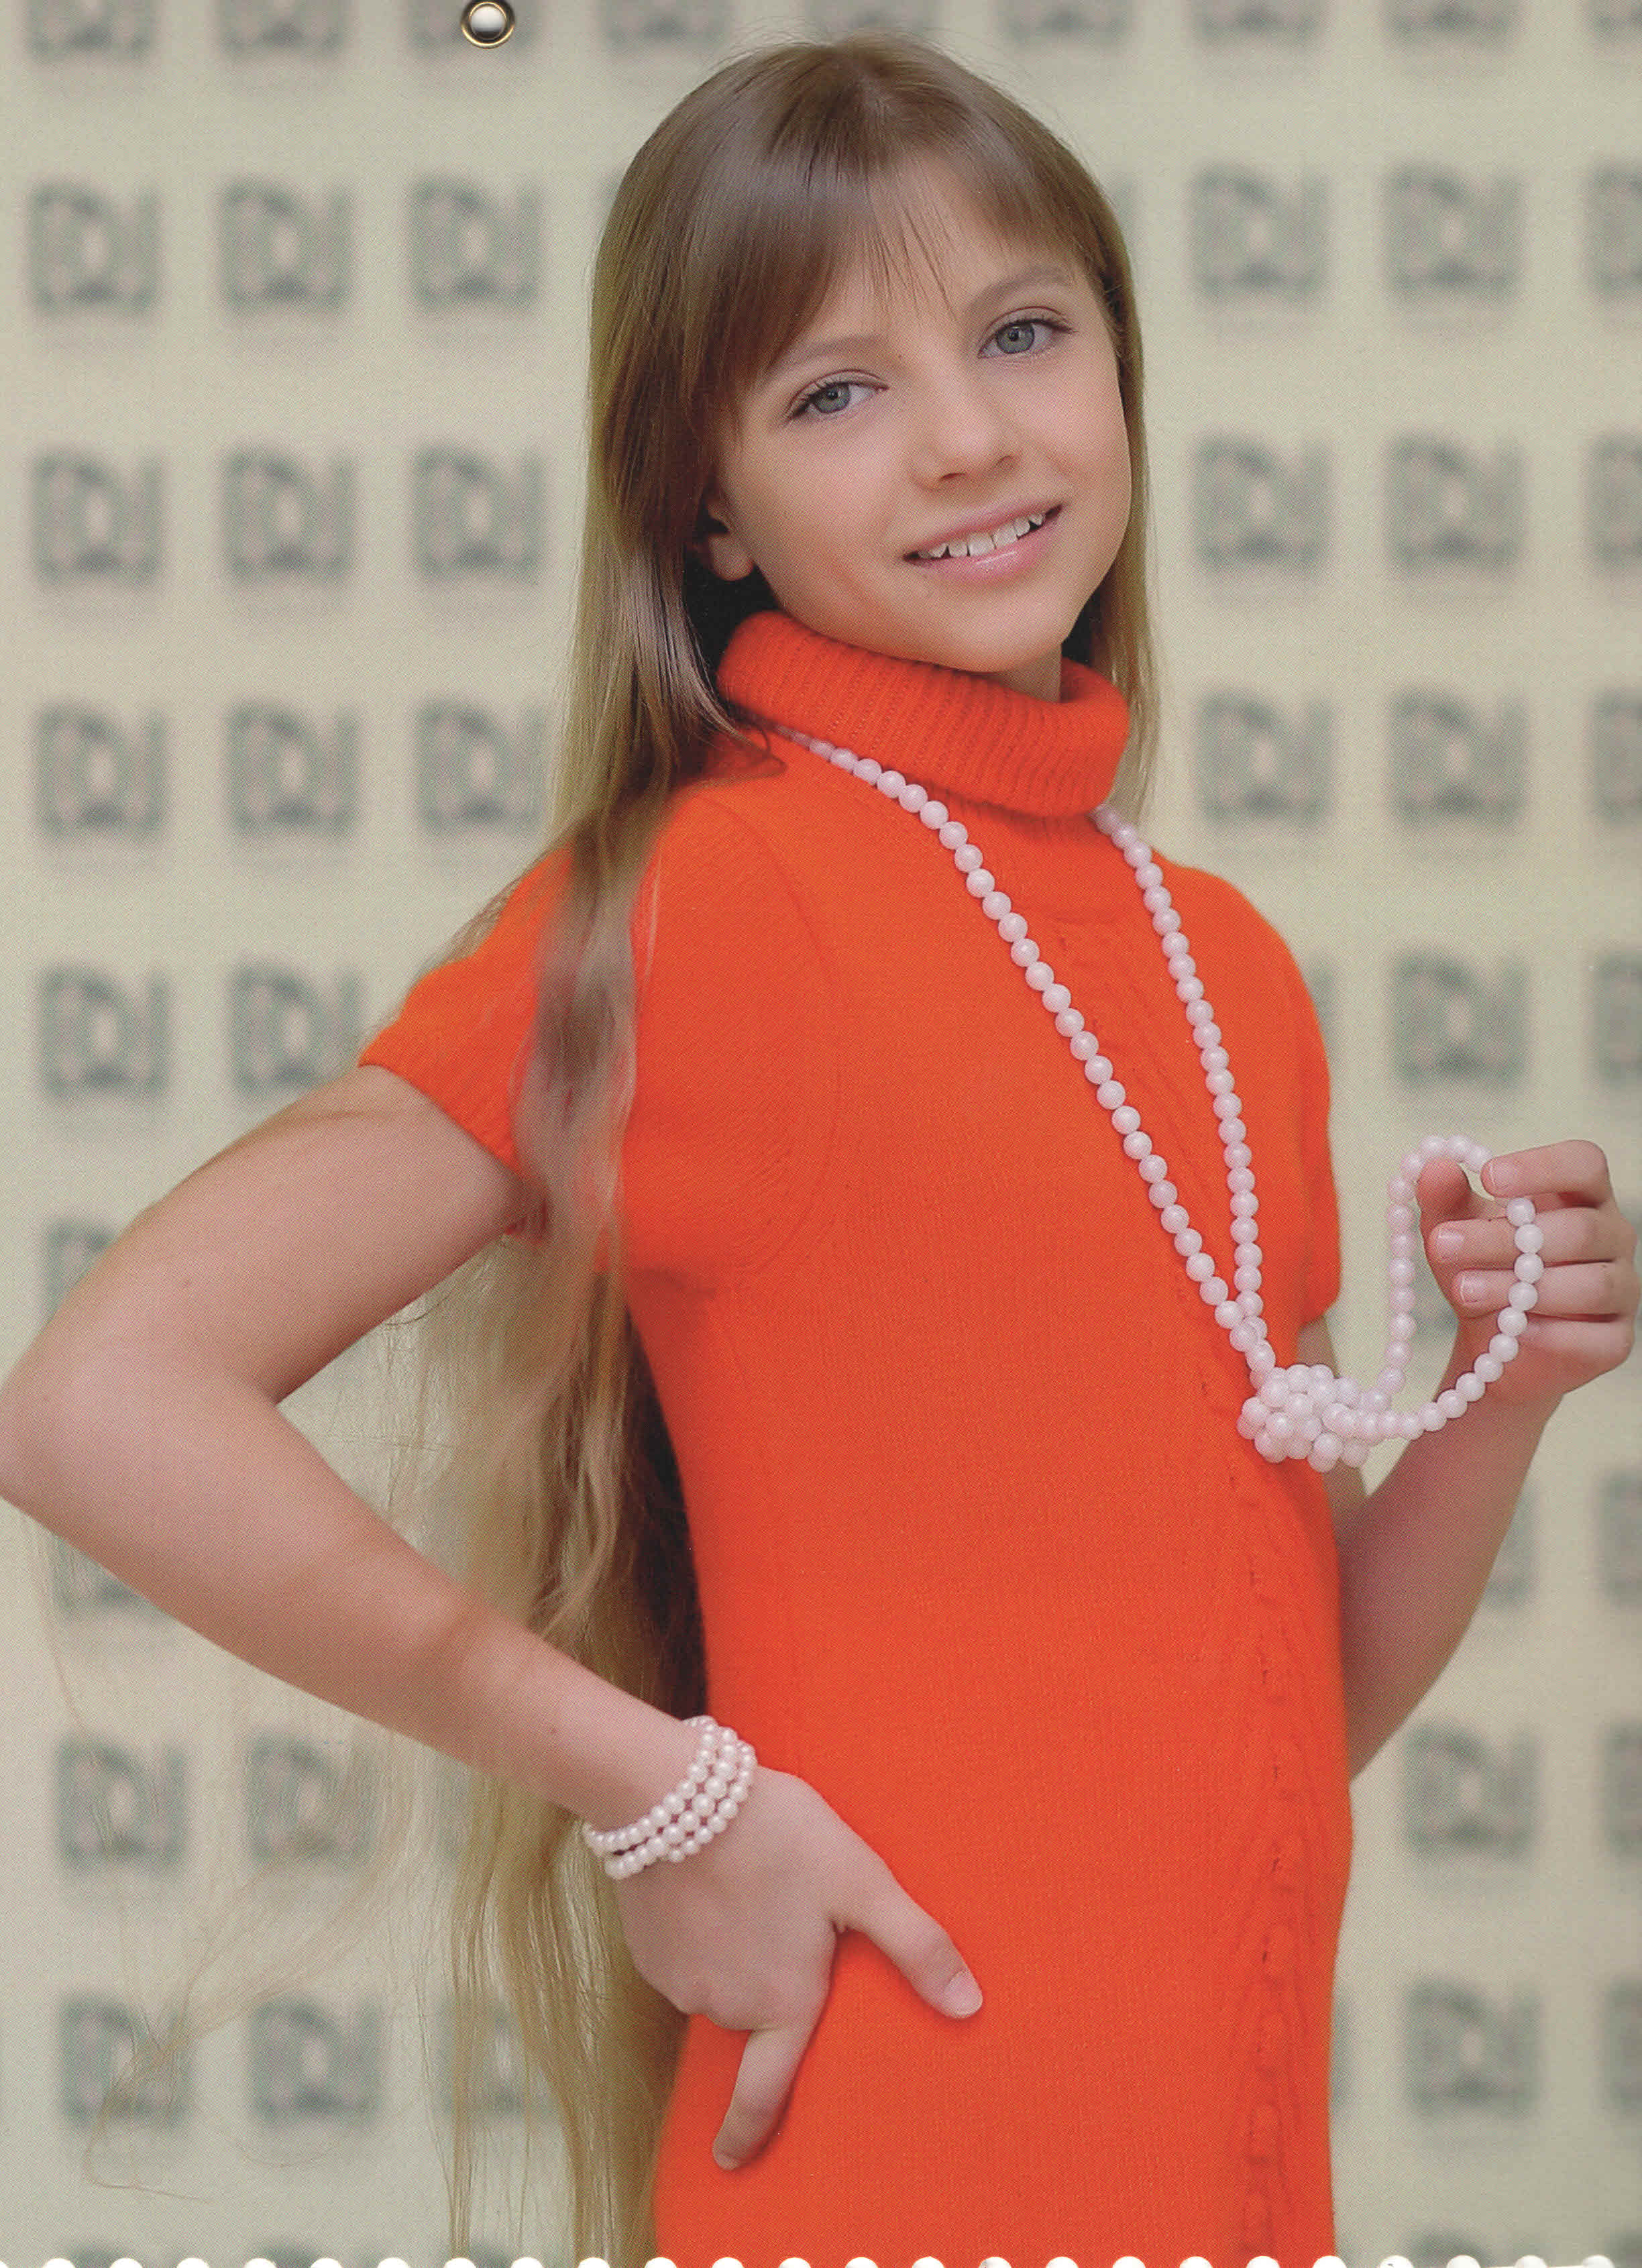 Софья Глущеня - аккредитованная модель для участия в подиумных показах на Междунродной Детской Неделе моды